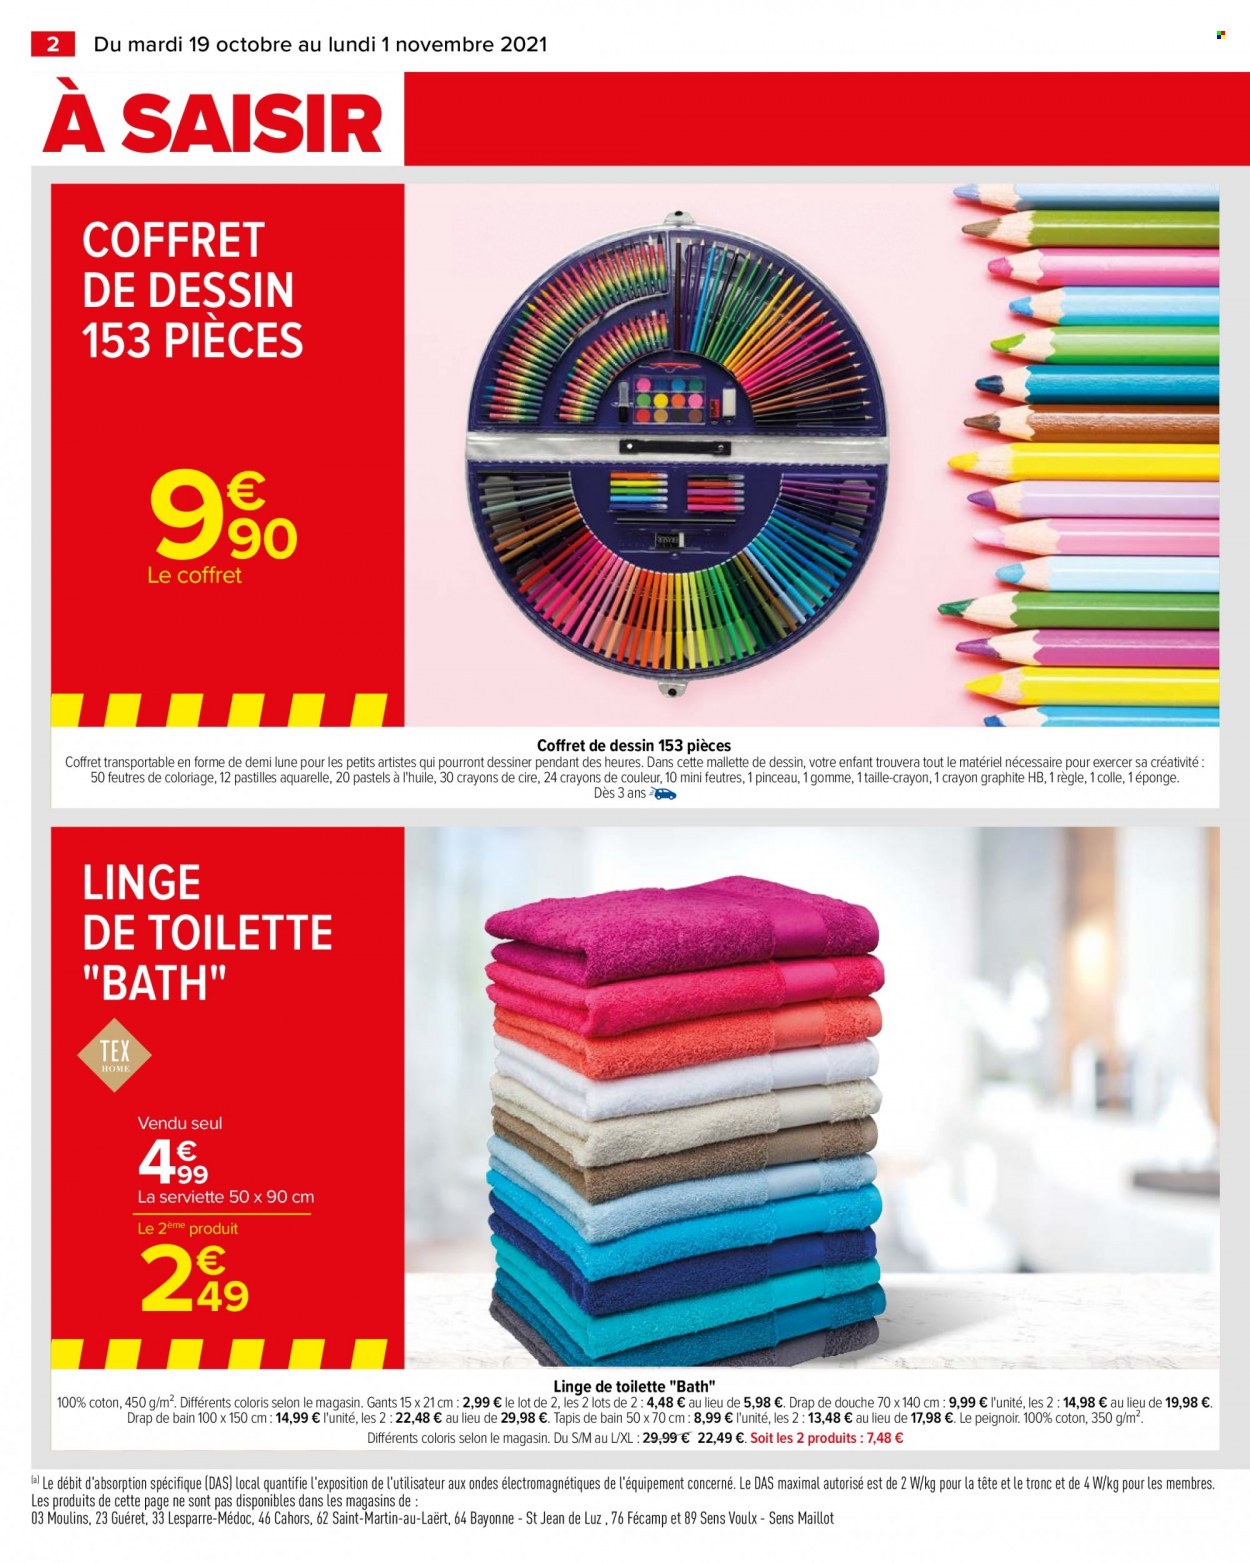 thumbnail - Catalogue Carrefour Hypermarchés - 19/10/2021 - 01/11/2021 - Produits soldés - pinceau, éponge, serviette, taille-crayon, feutre, coloriage, drap, tapis, drap de bain, tapis de bain, peignoir, gants, mallette. Page 2.